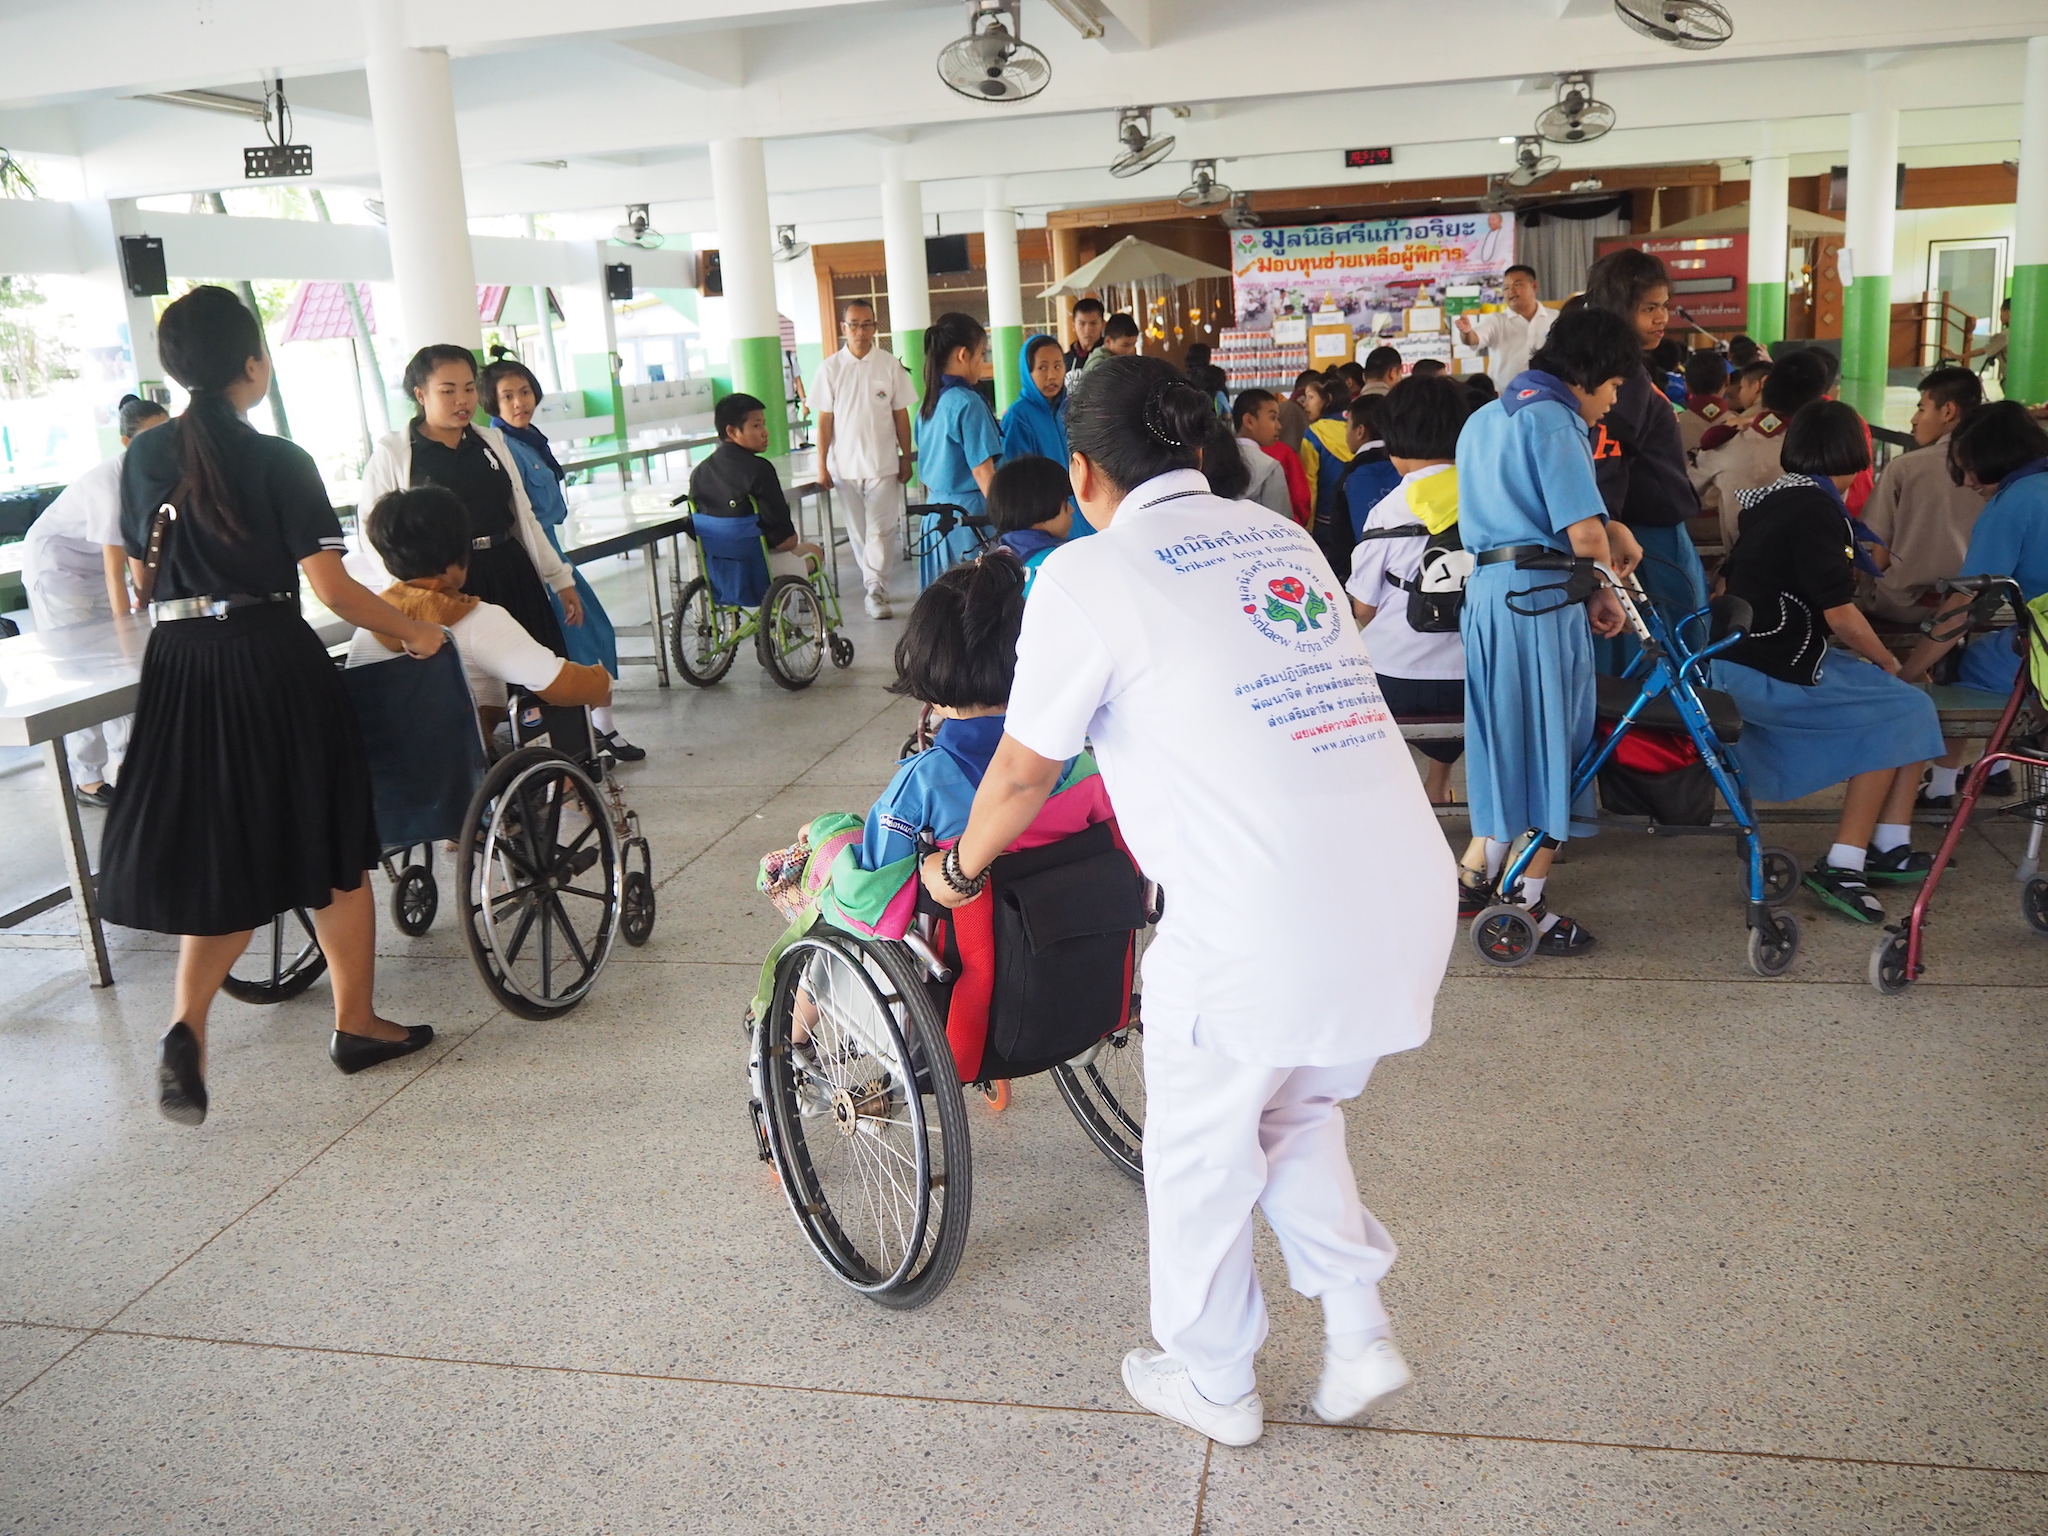 โครงการมอบทุนช่วยเหลือผู้พิการ วันที่  4 มกราคม 2560 ณ โรงเรียนศรีสังวาลย์ขอนแก่น อ.เมืองขอนแก่น จ.ขอนแก่น  